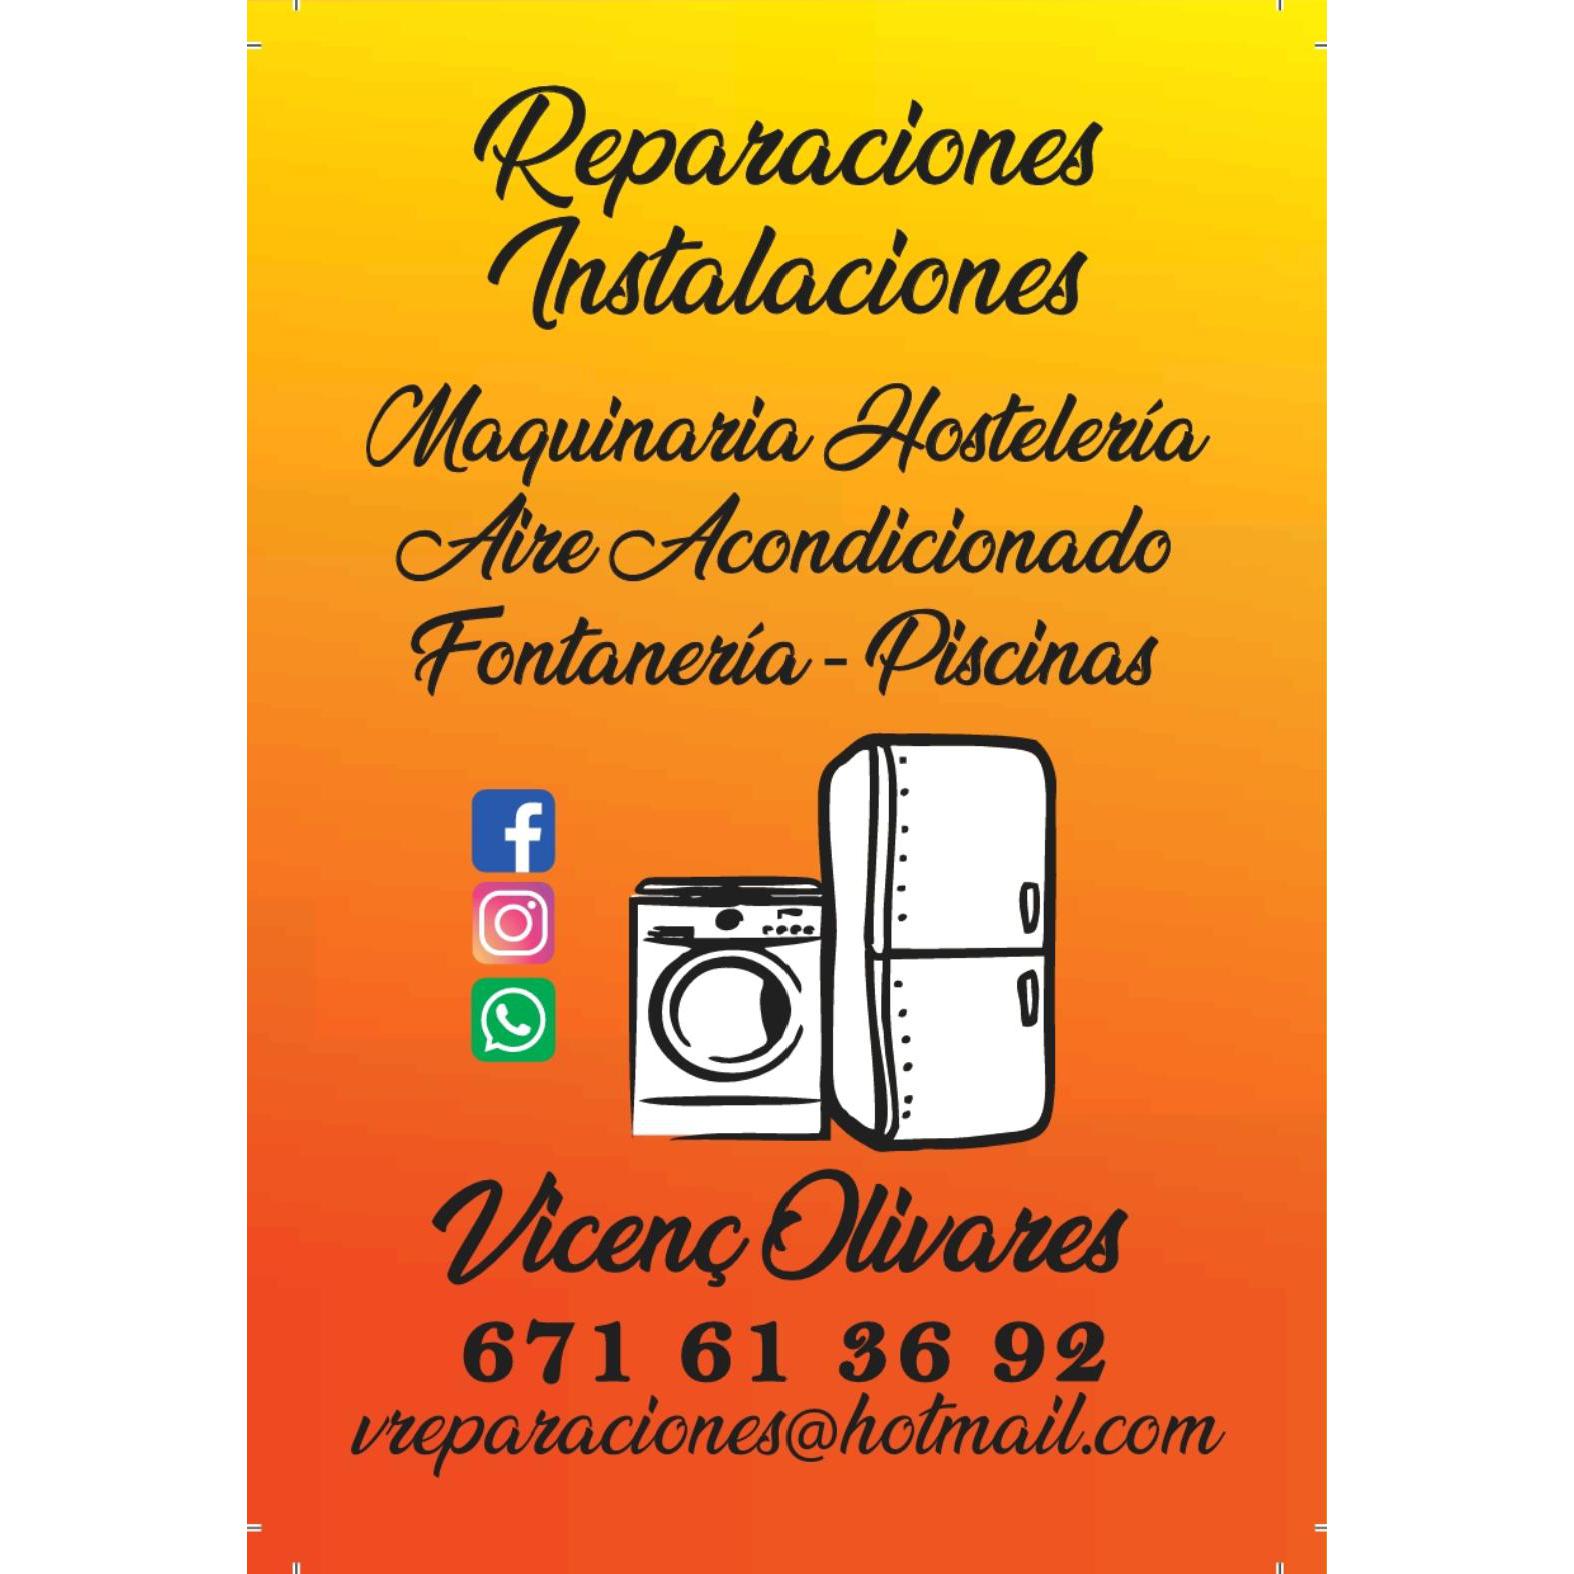 Reparaciones Instalaciones Vicenç Olivares Logo